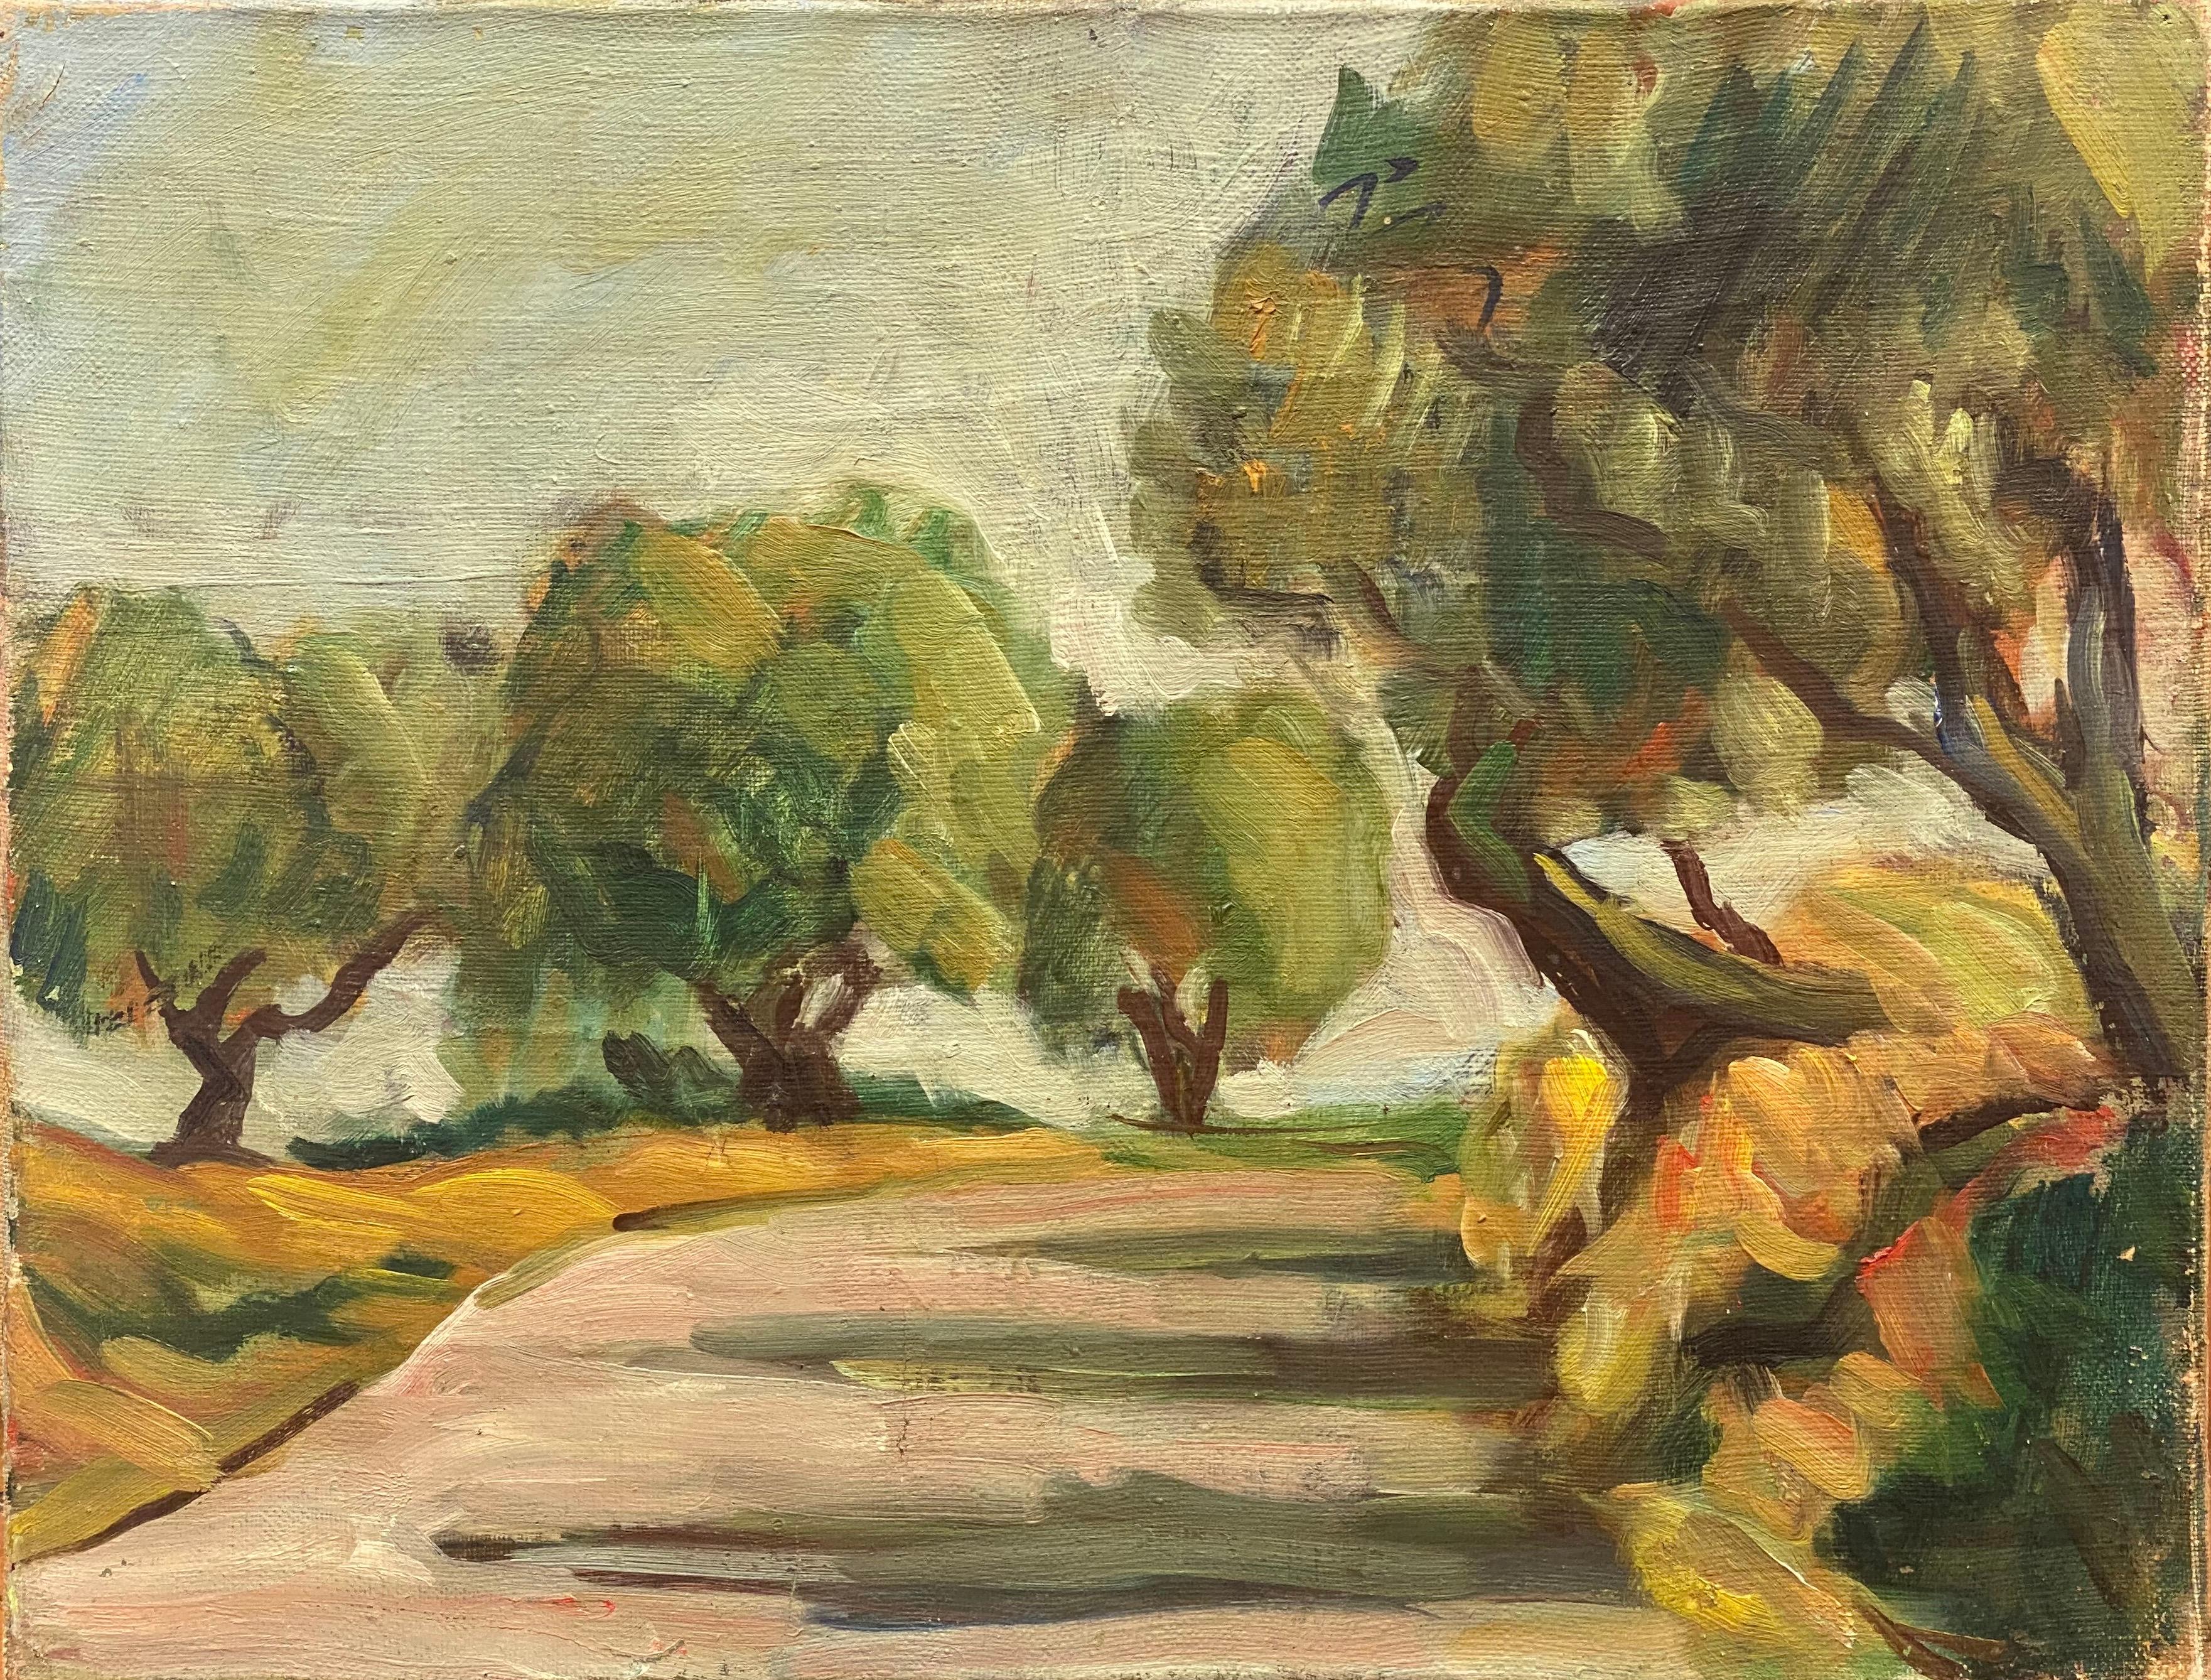 Landscape Painting 1950's French - Huile impressionniste française des années 1950 - Chemin de campagne provençal éclairé par un soleil